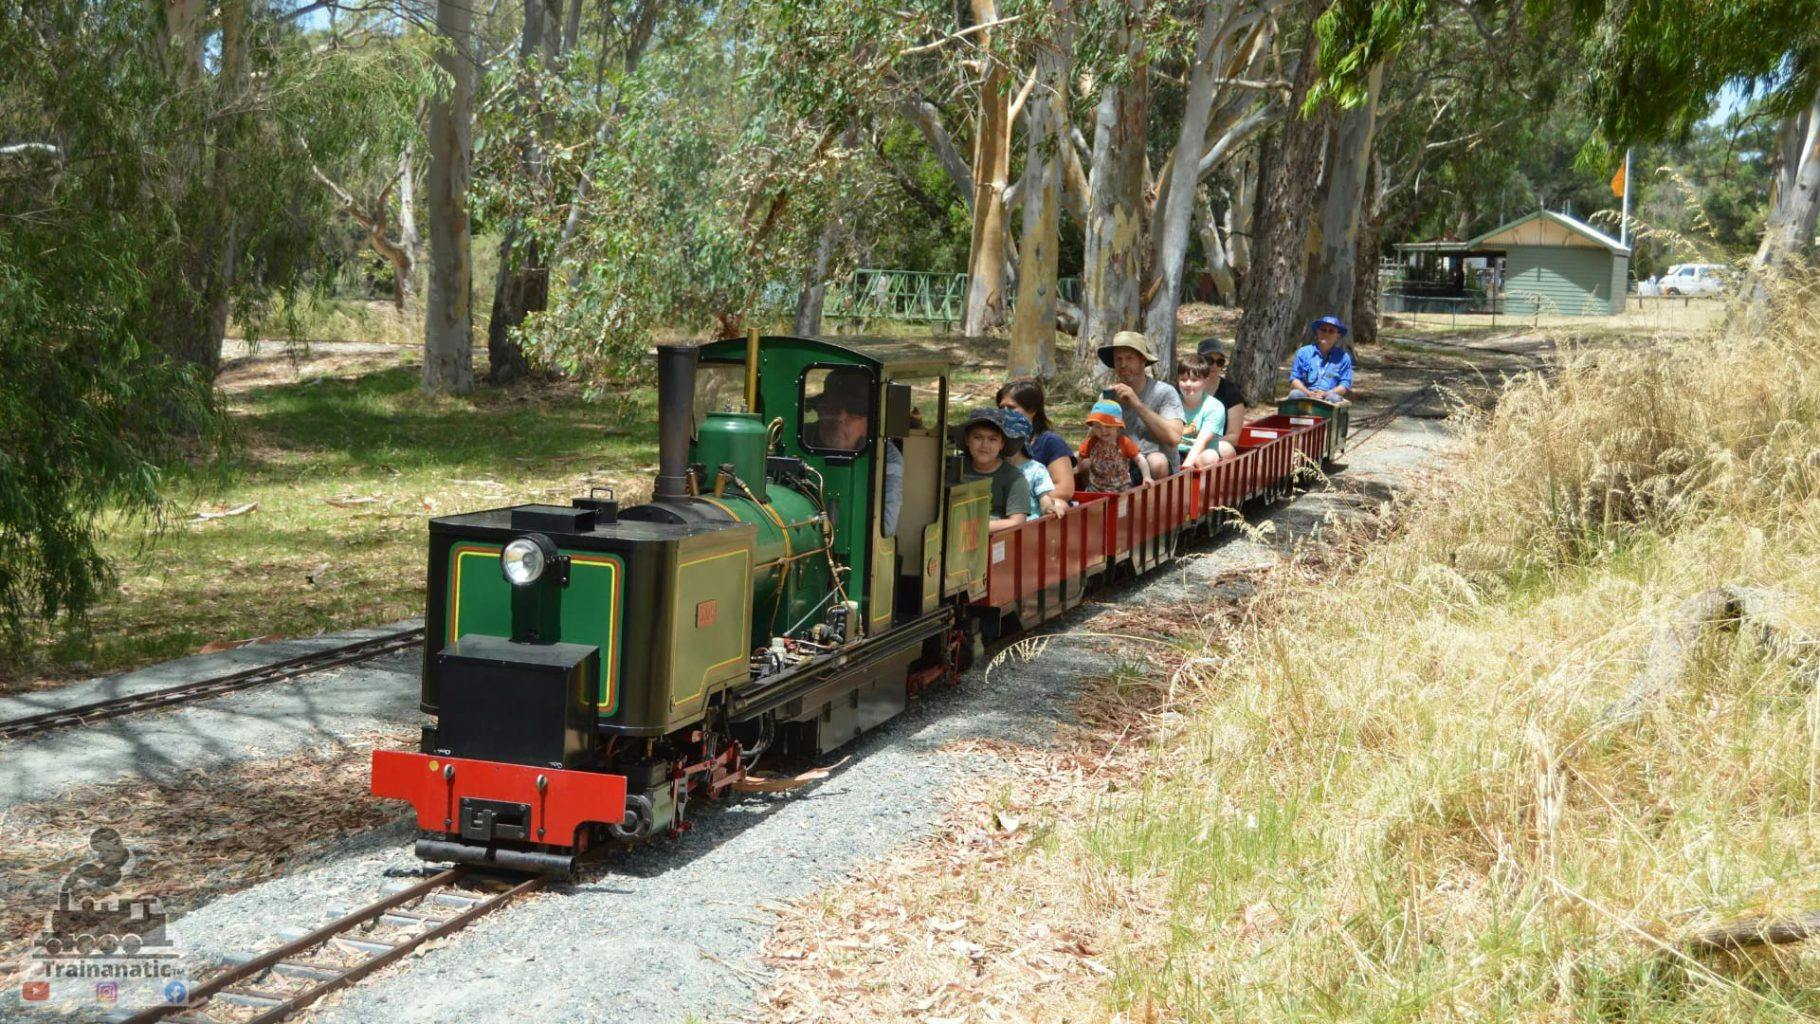 Castledaire Miniature Railway park